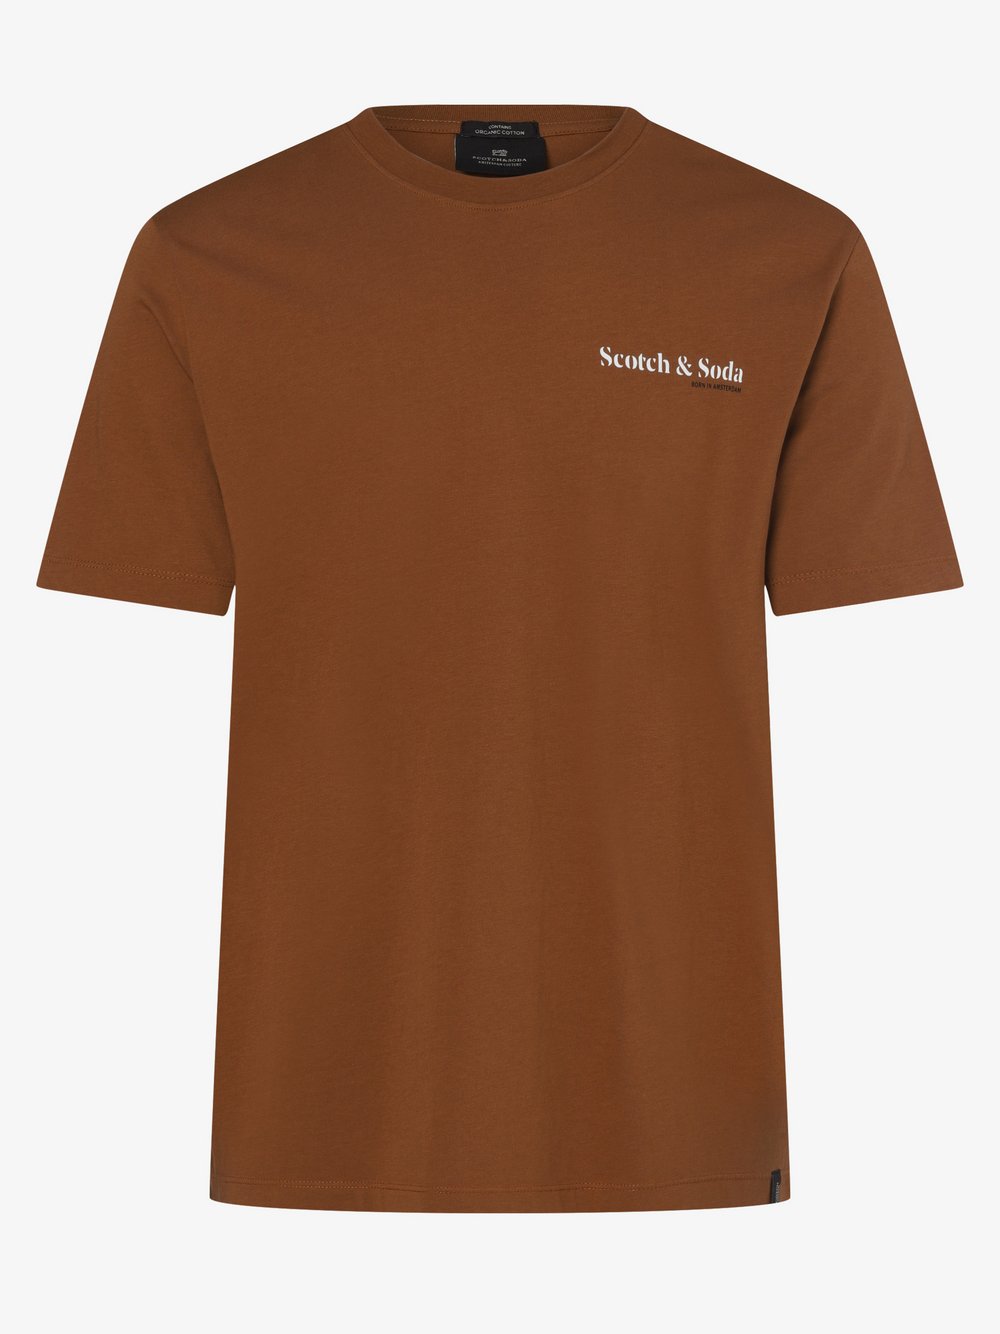 Scotch & Soda - T-shirt męski, brązowy